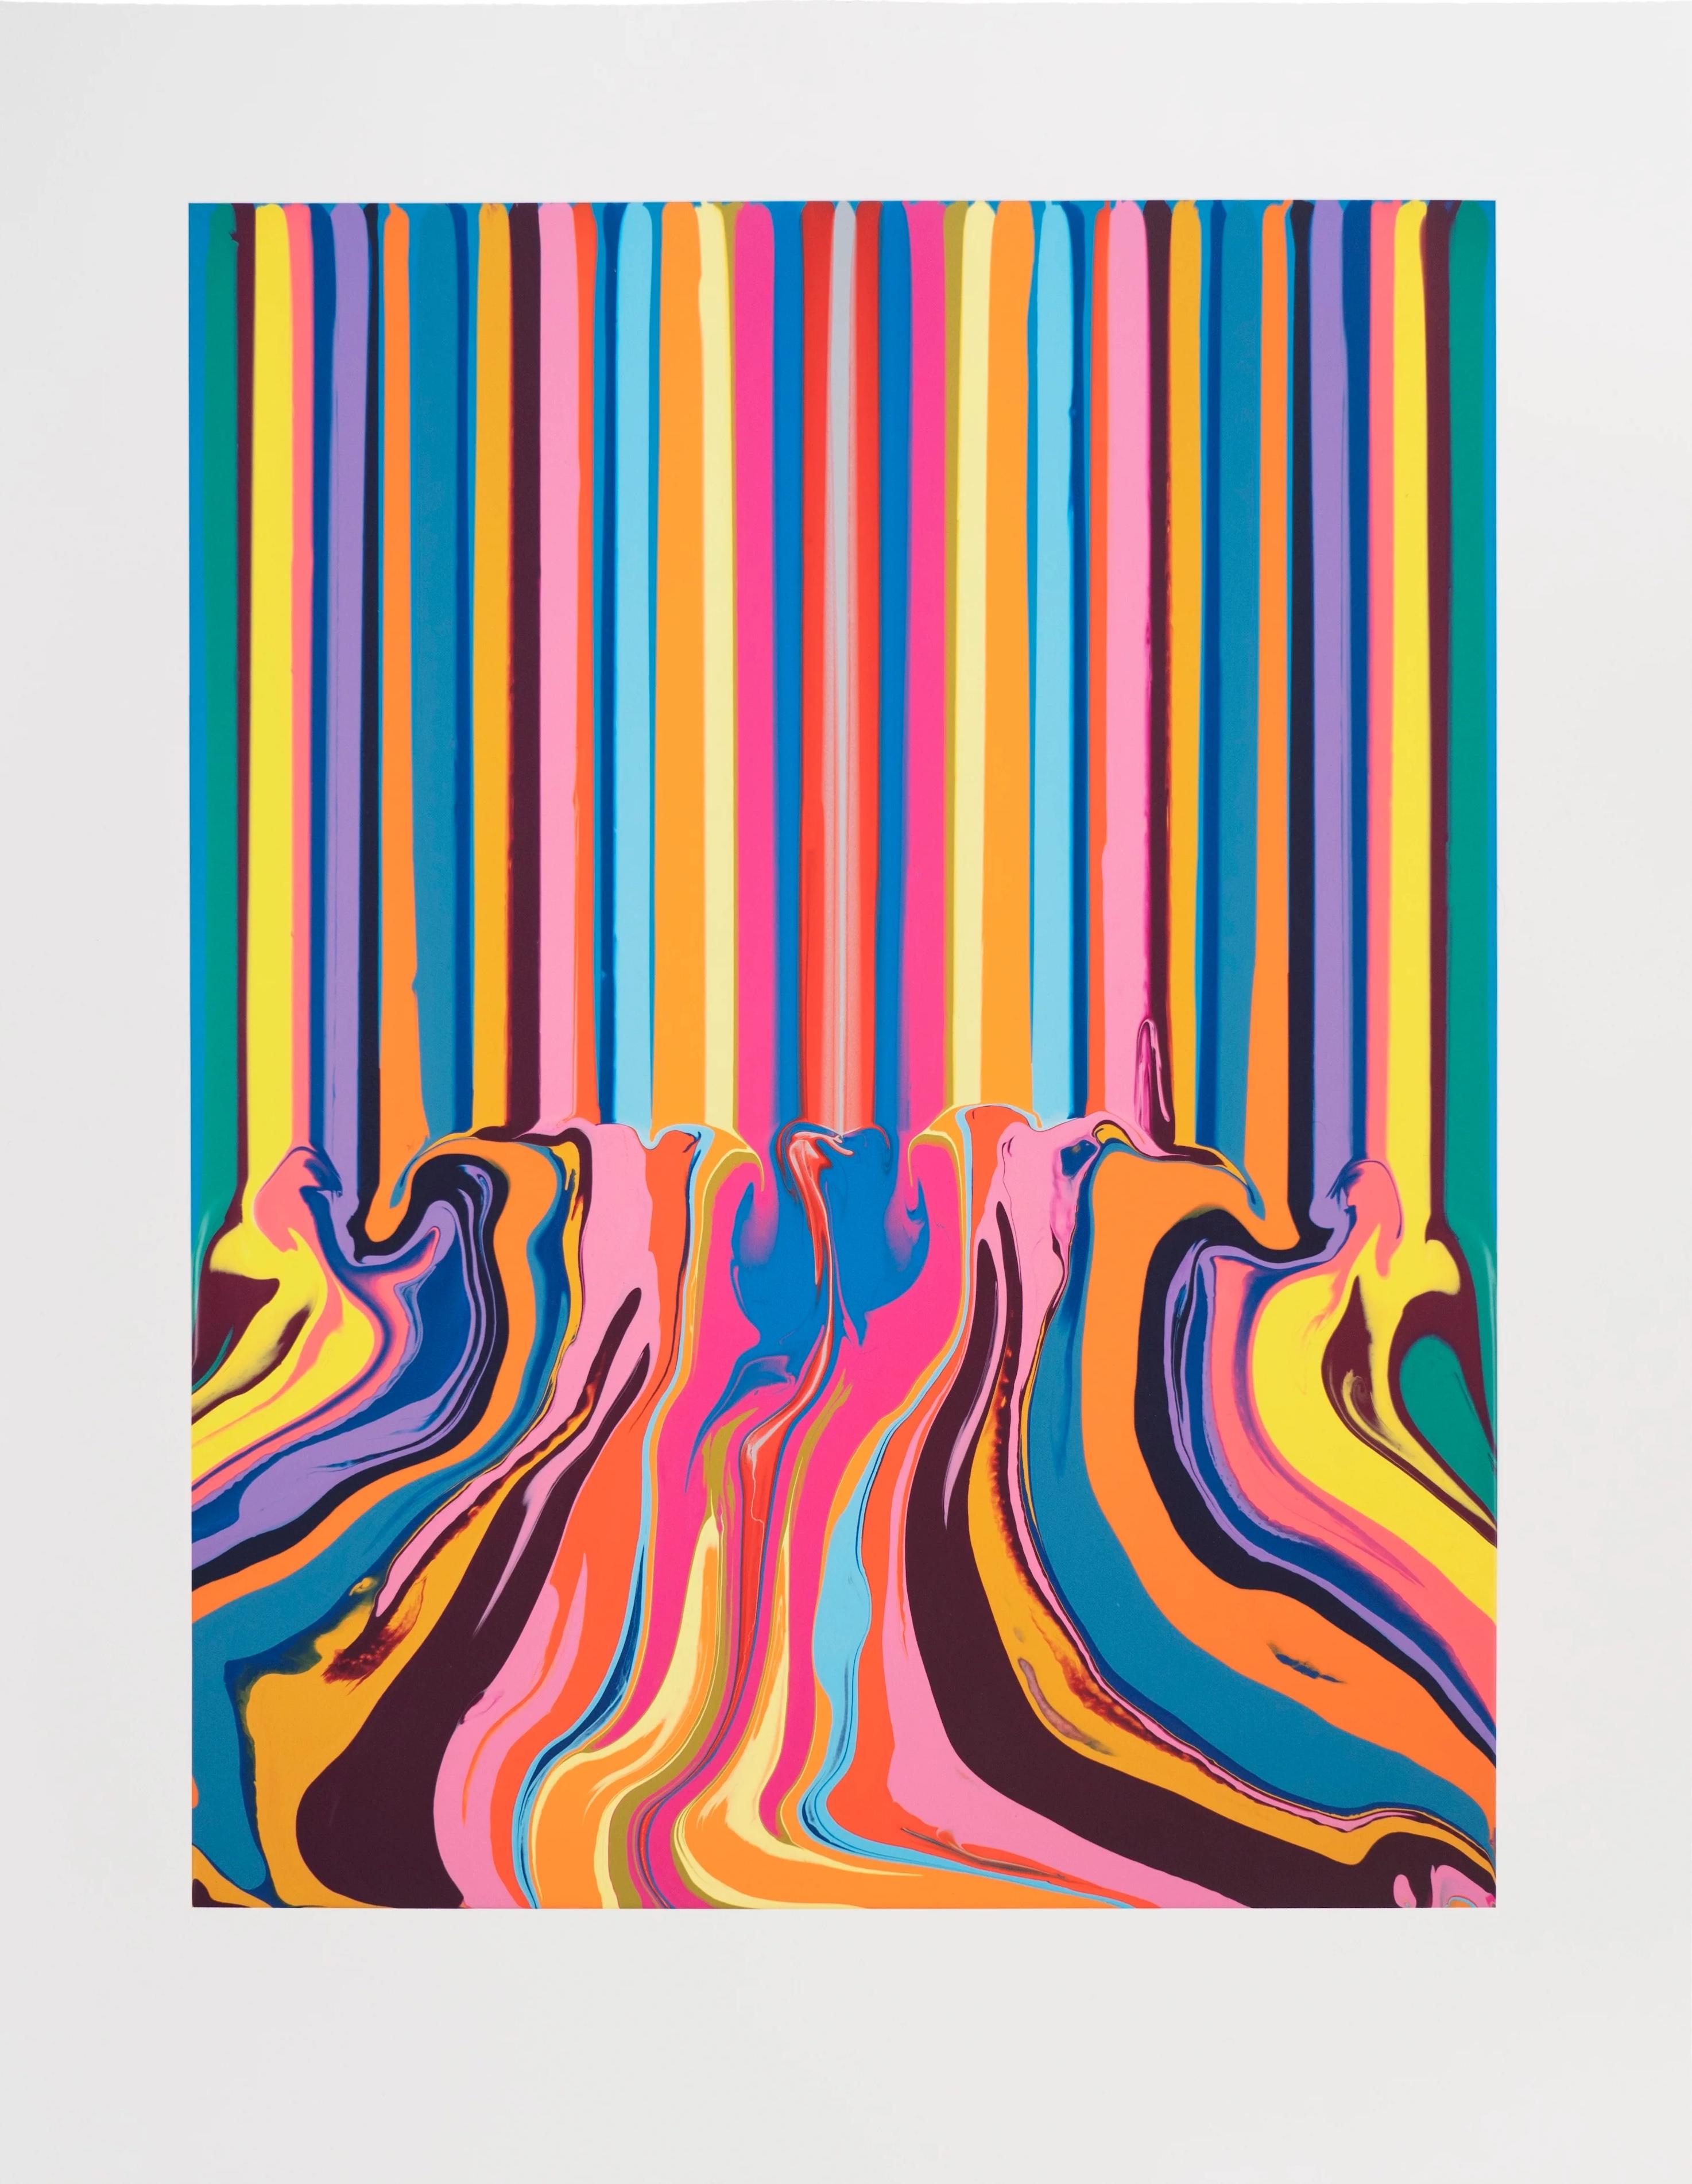 Uplift -- Archivalischer Tintenstrahldruck, farbige Linien, farbige Kunst von Ian Davenport